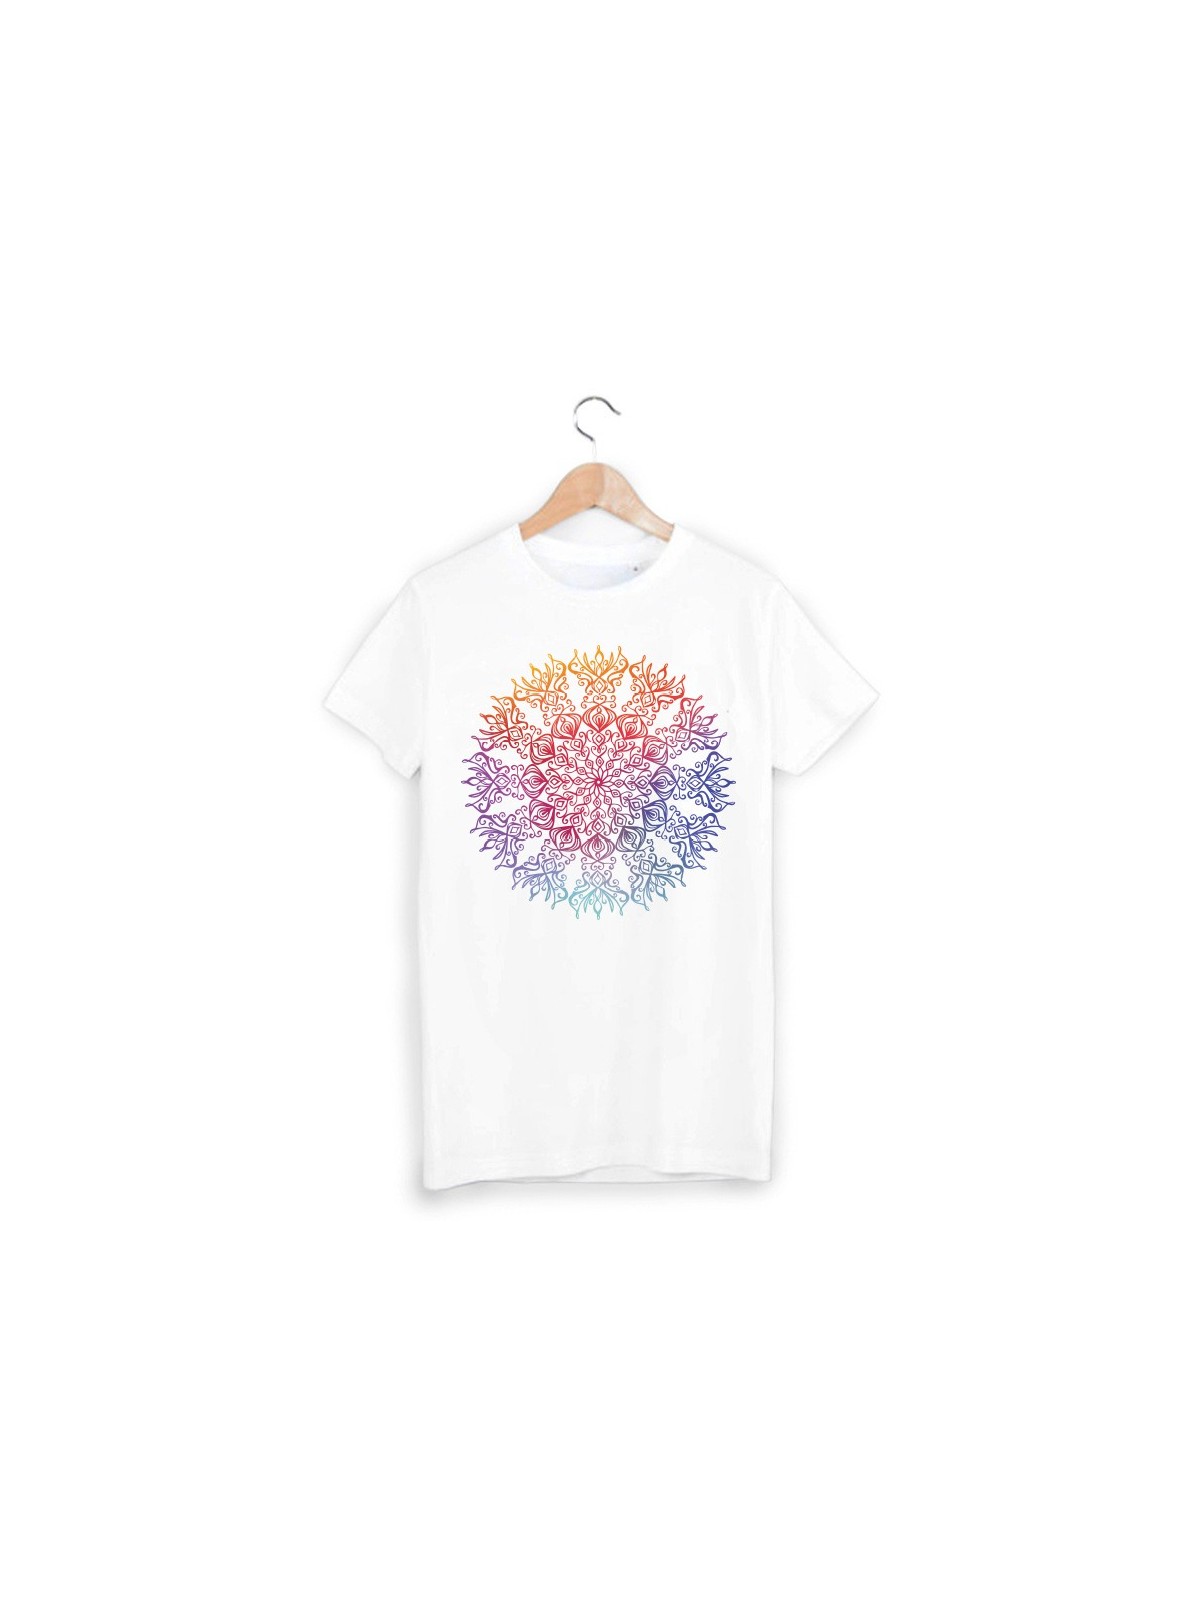 T-Shirt hippie ref 903